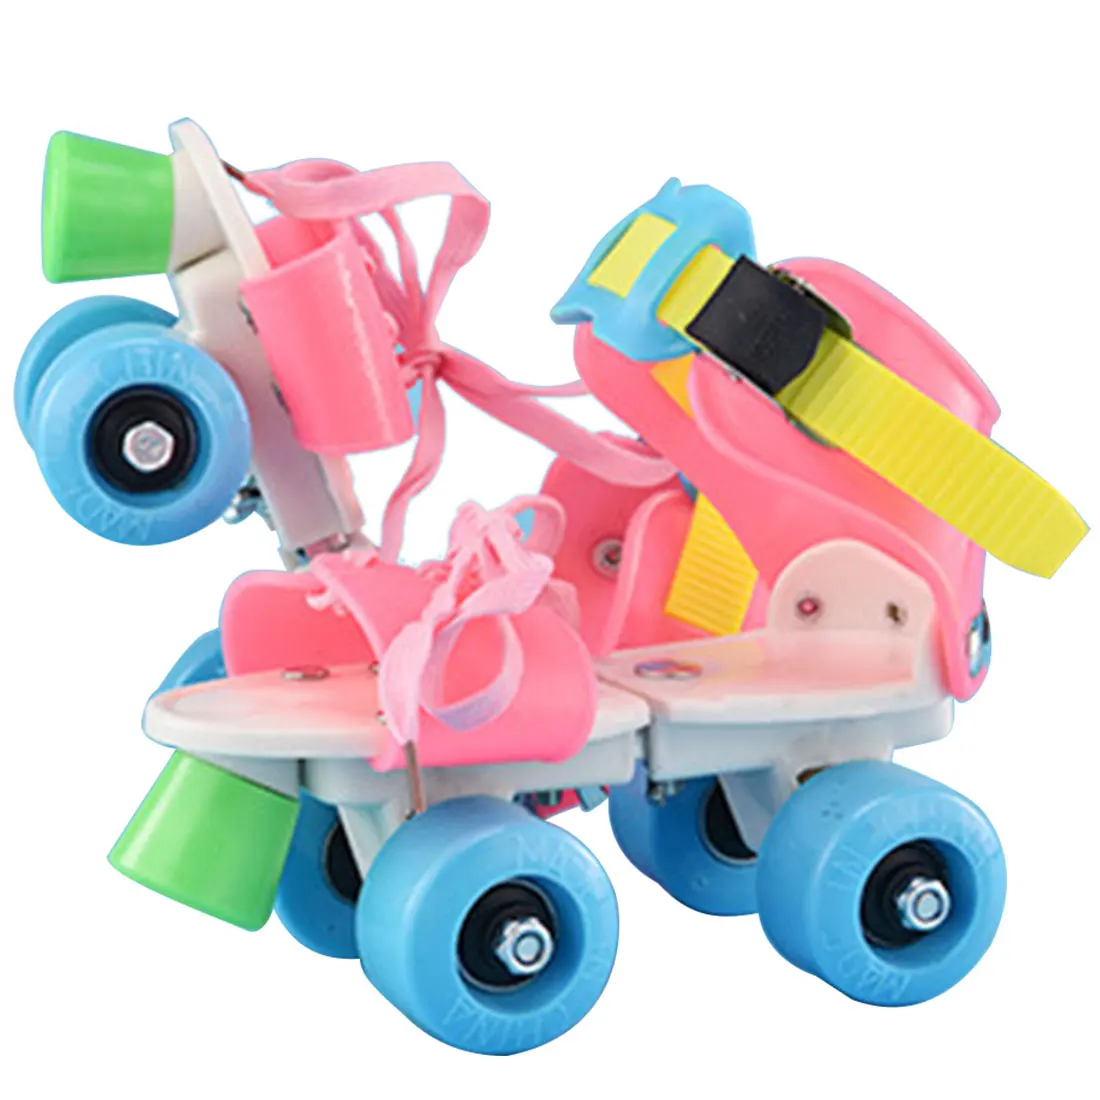 Новые детские роликовые коньки двухрядные 4 колеса регулируемый размер обувь для катания на коньках раздвижные Инлайн ролики для слалома подарки для детей